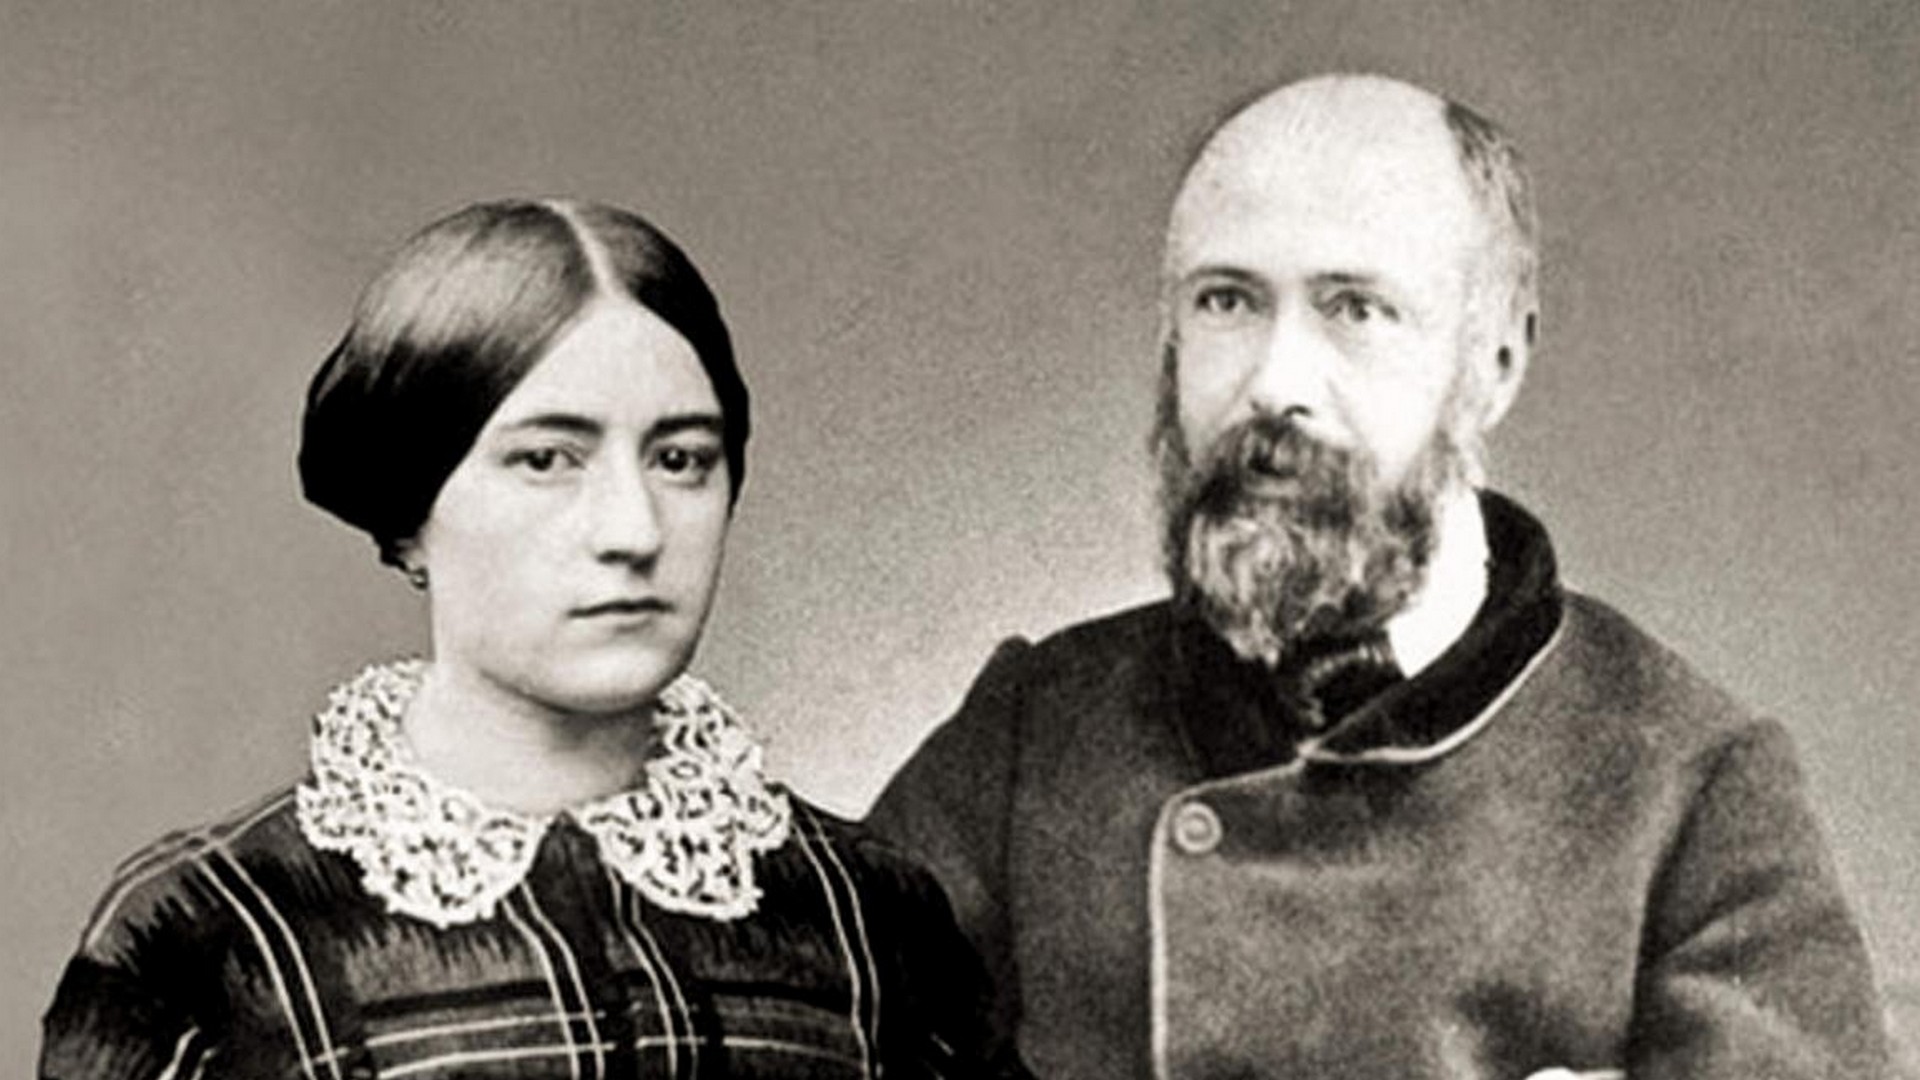 Zélie et Louis Martin, parents de sainte Thérèse de l'Enfant Jésus (Photo: domaine public)